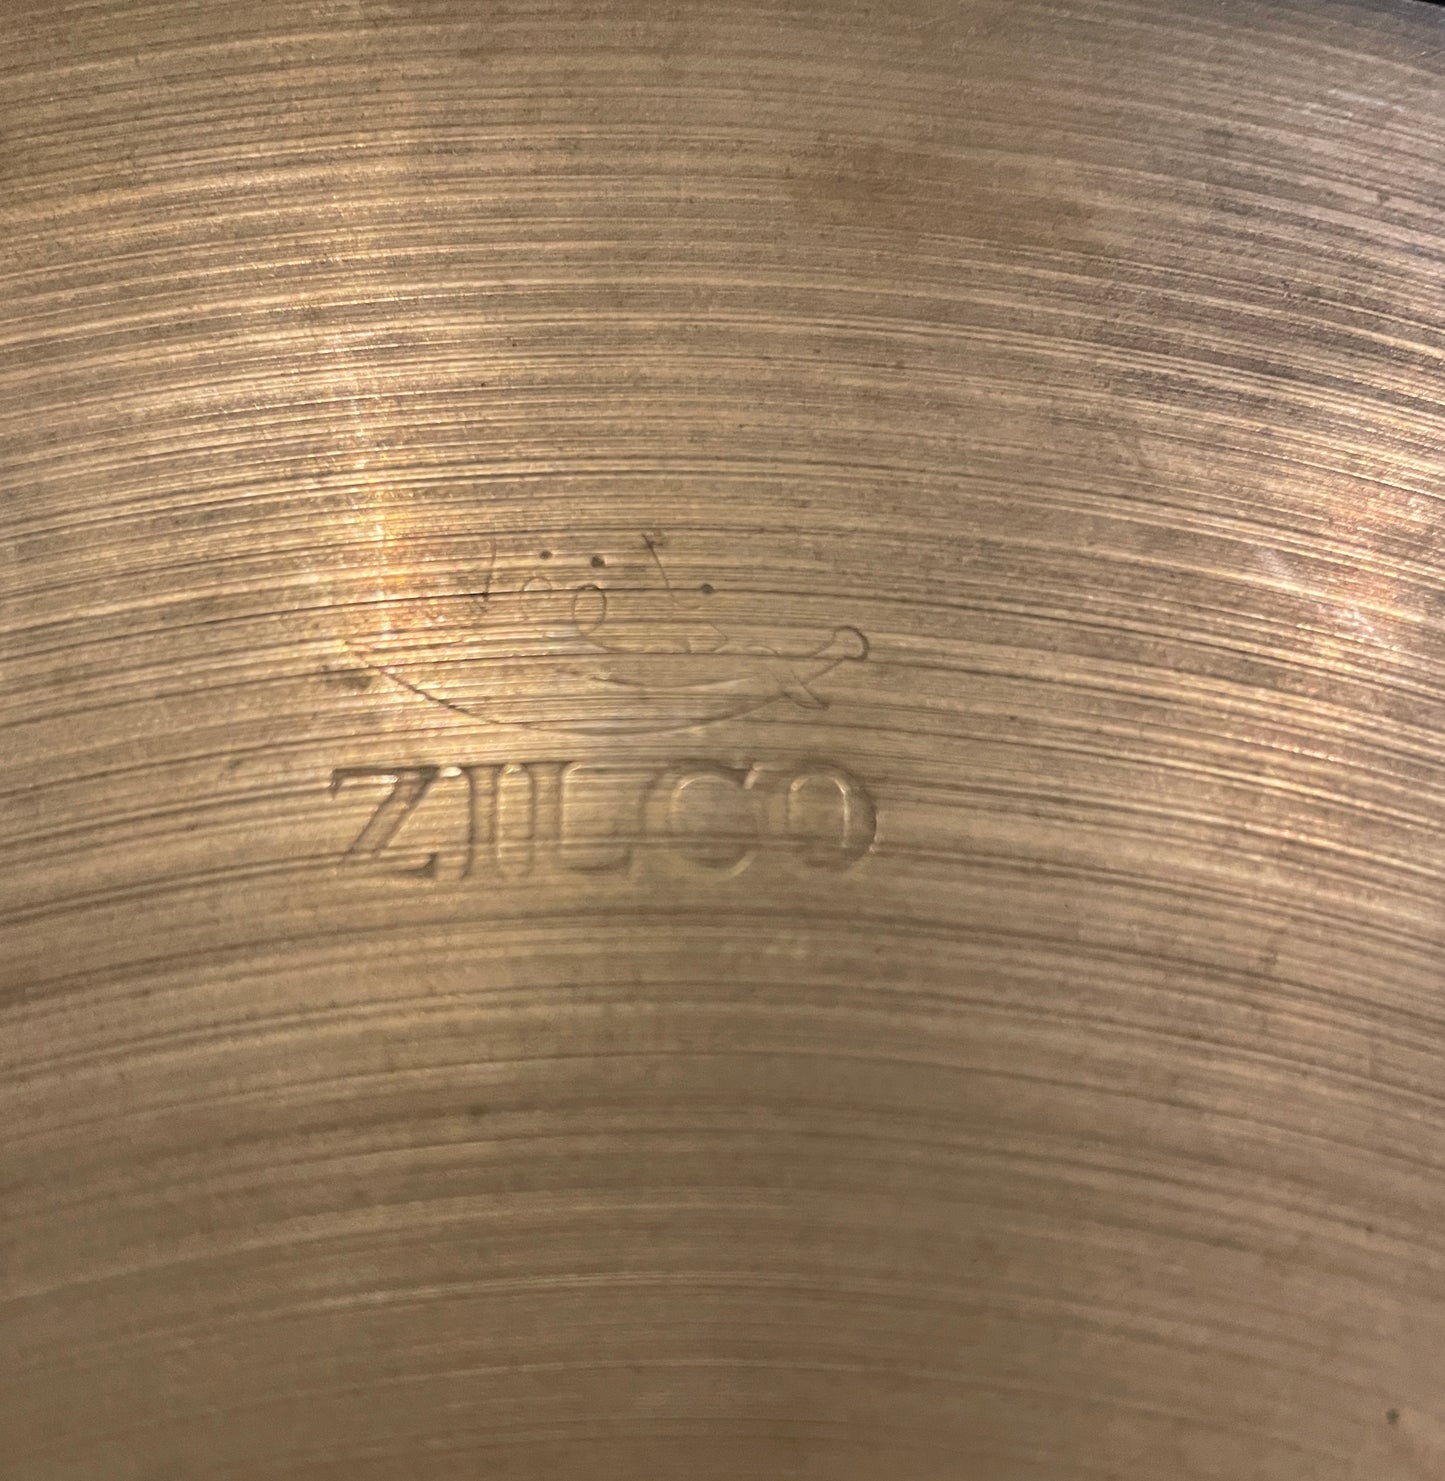 14" Zilco by Zildjian 1940s-50s Crash / Splash 554g #717